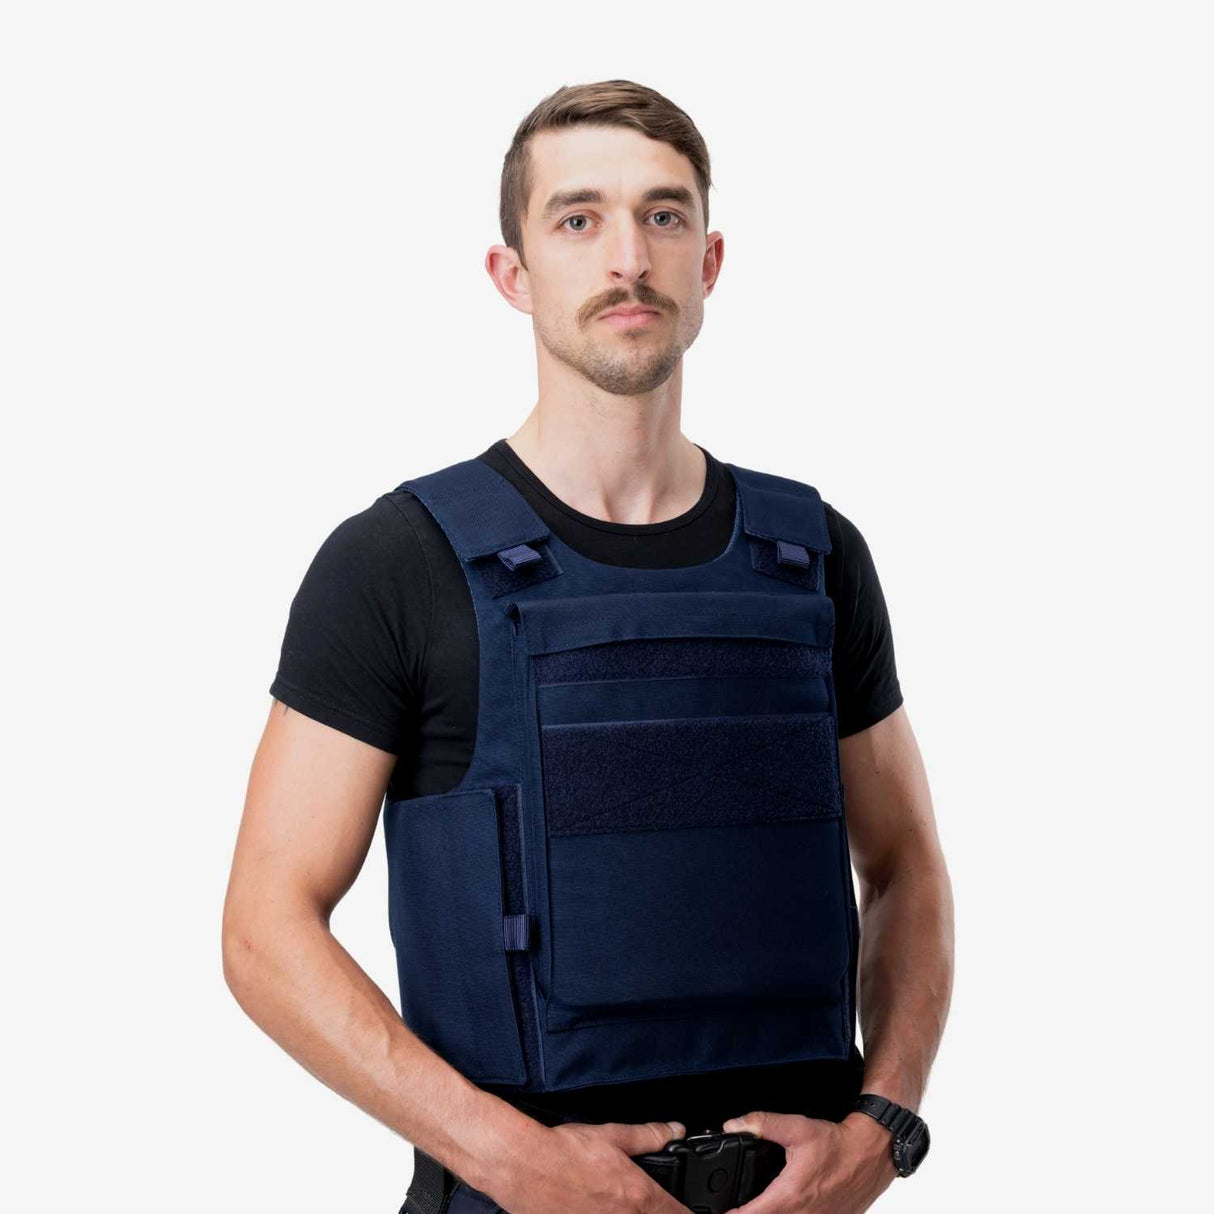 SHIELD Germany tactical vest DELTA Enforcement SK1 to SK4